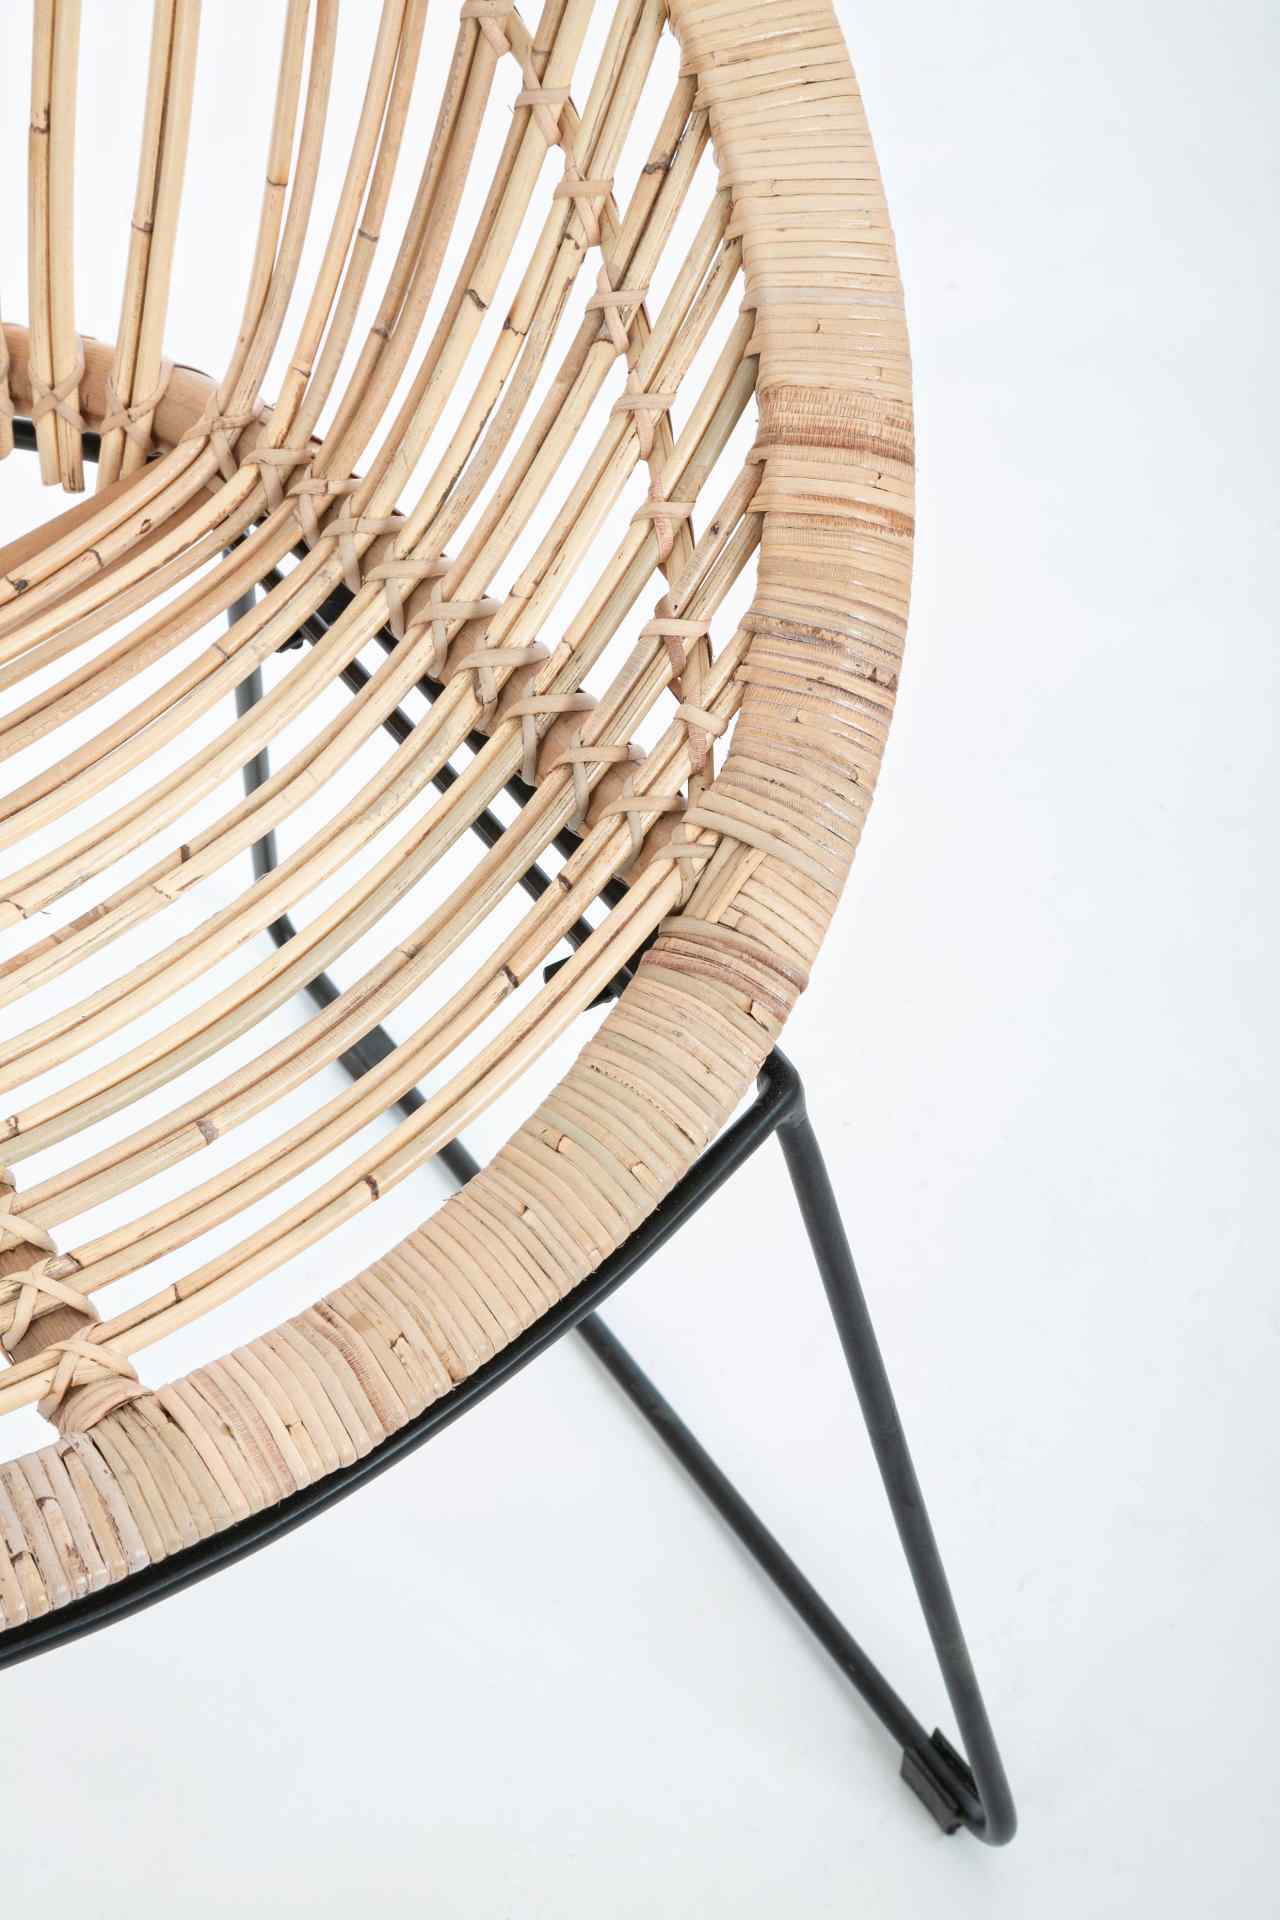 Der Sessel Cayes überzeugt mit seinem klassischen Design. Gefertigt wurde er aus Rattan, welches einen natürlichen Farbton besitzt. Das Gestell ist aus Metall und hat eine schwarze Farbe. Der Sessel besitzt eine Sitzhöhe von 45 cm. Die Breite beträgt 75 c